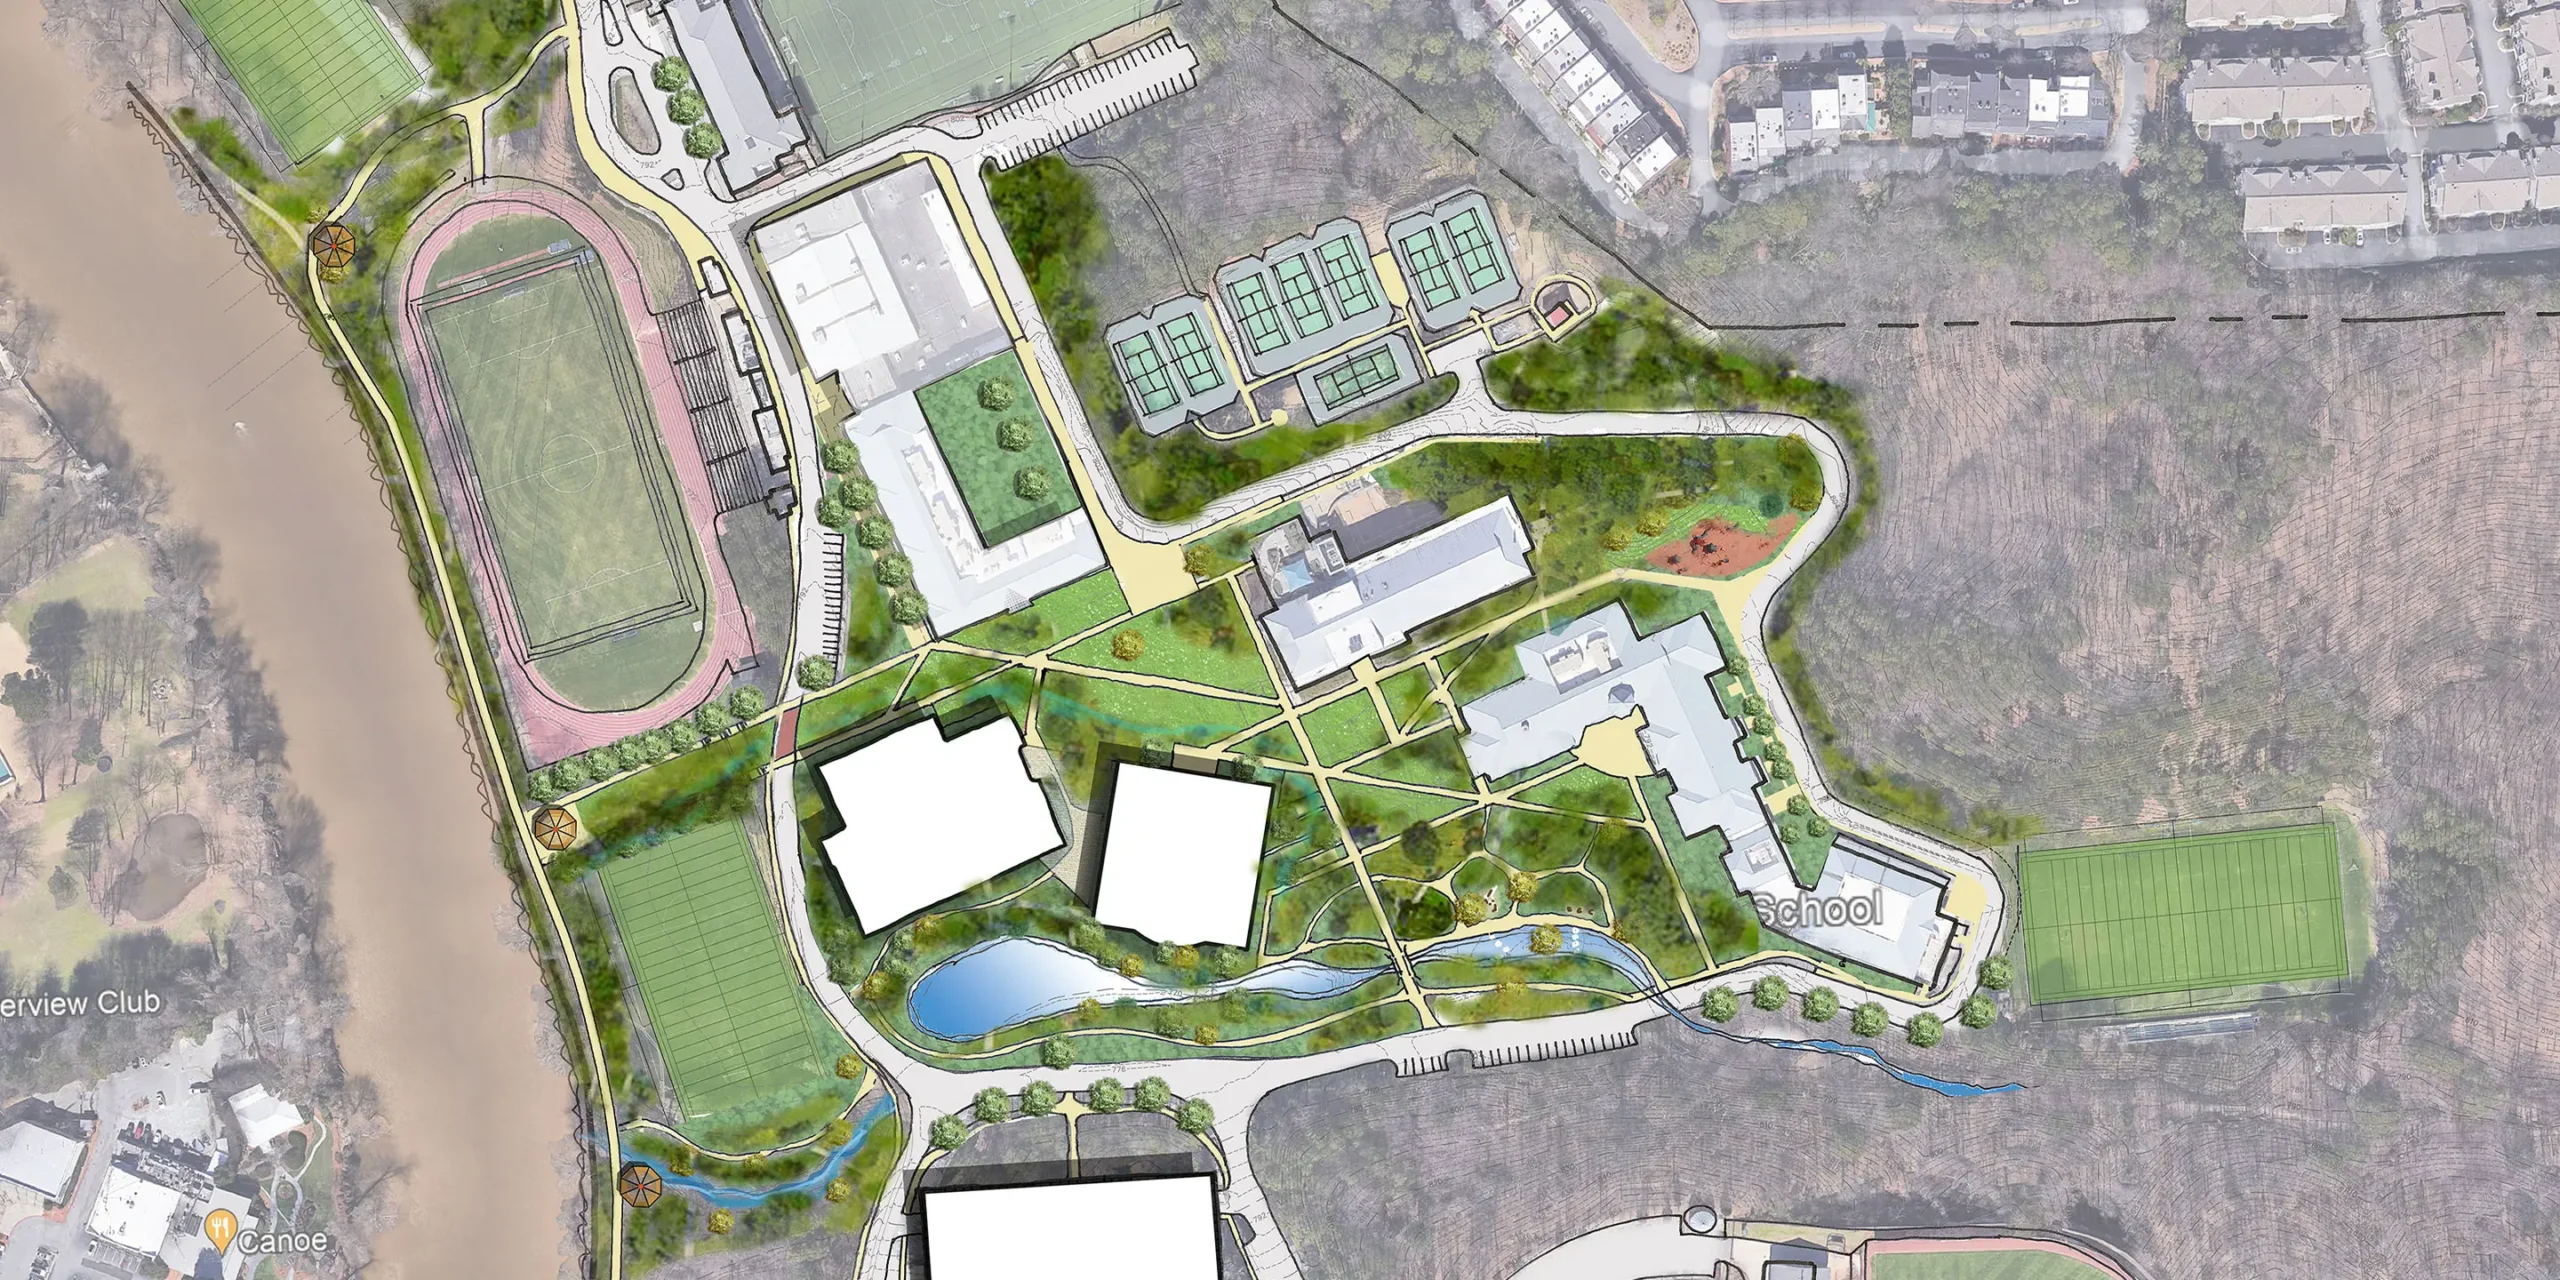 The Lovett School Campus Plan